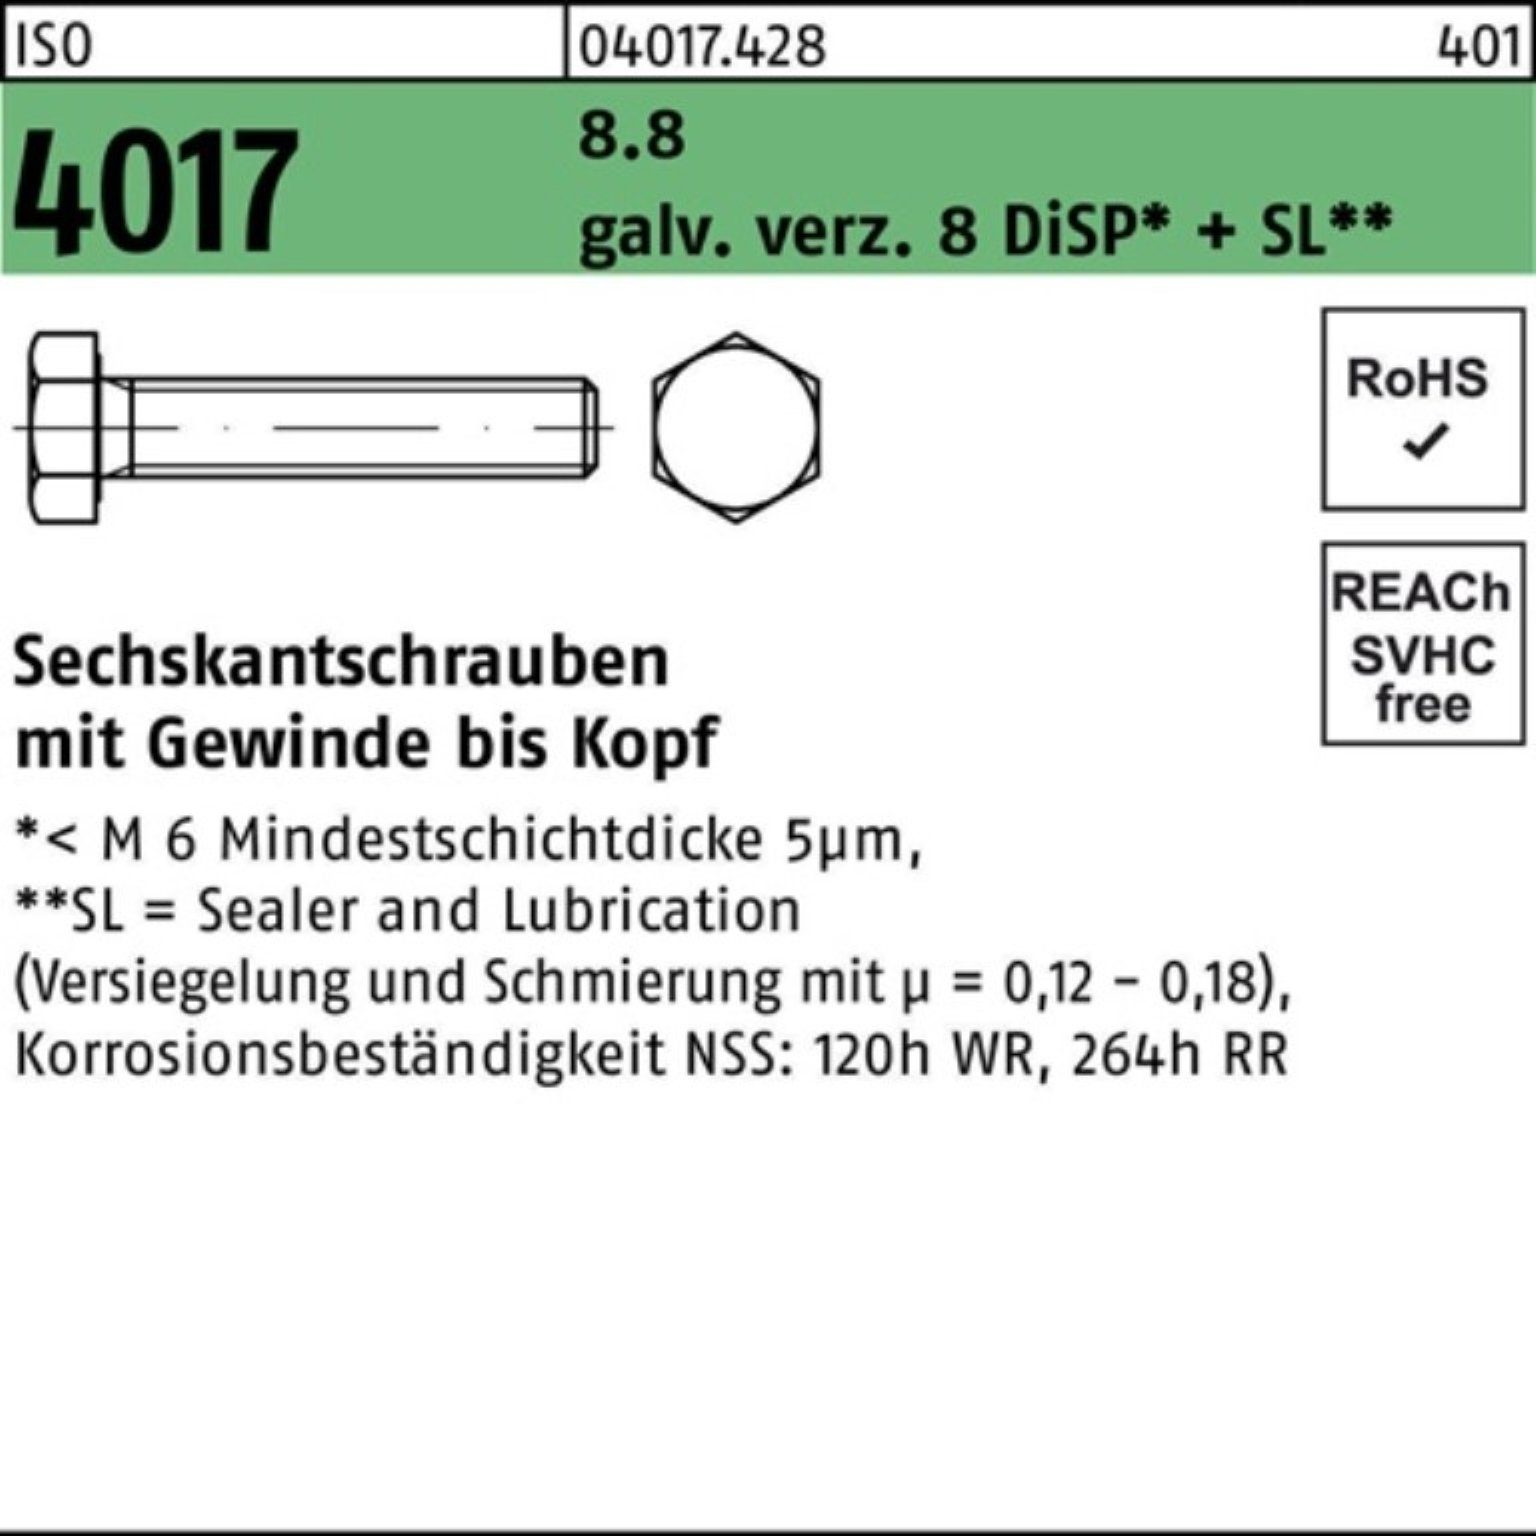 Bufab Sechskantschraube 500er Pack ISO 18 galv.verz. DiSP+ 8 4017 M6x 8.8 VG Sechskantschraube